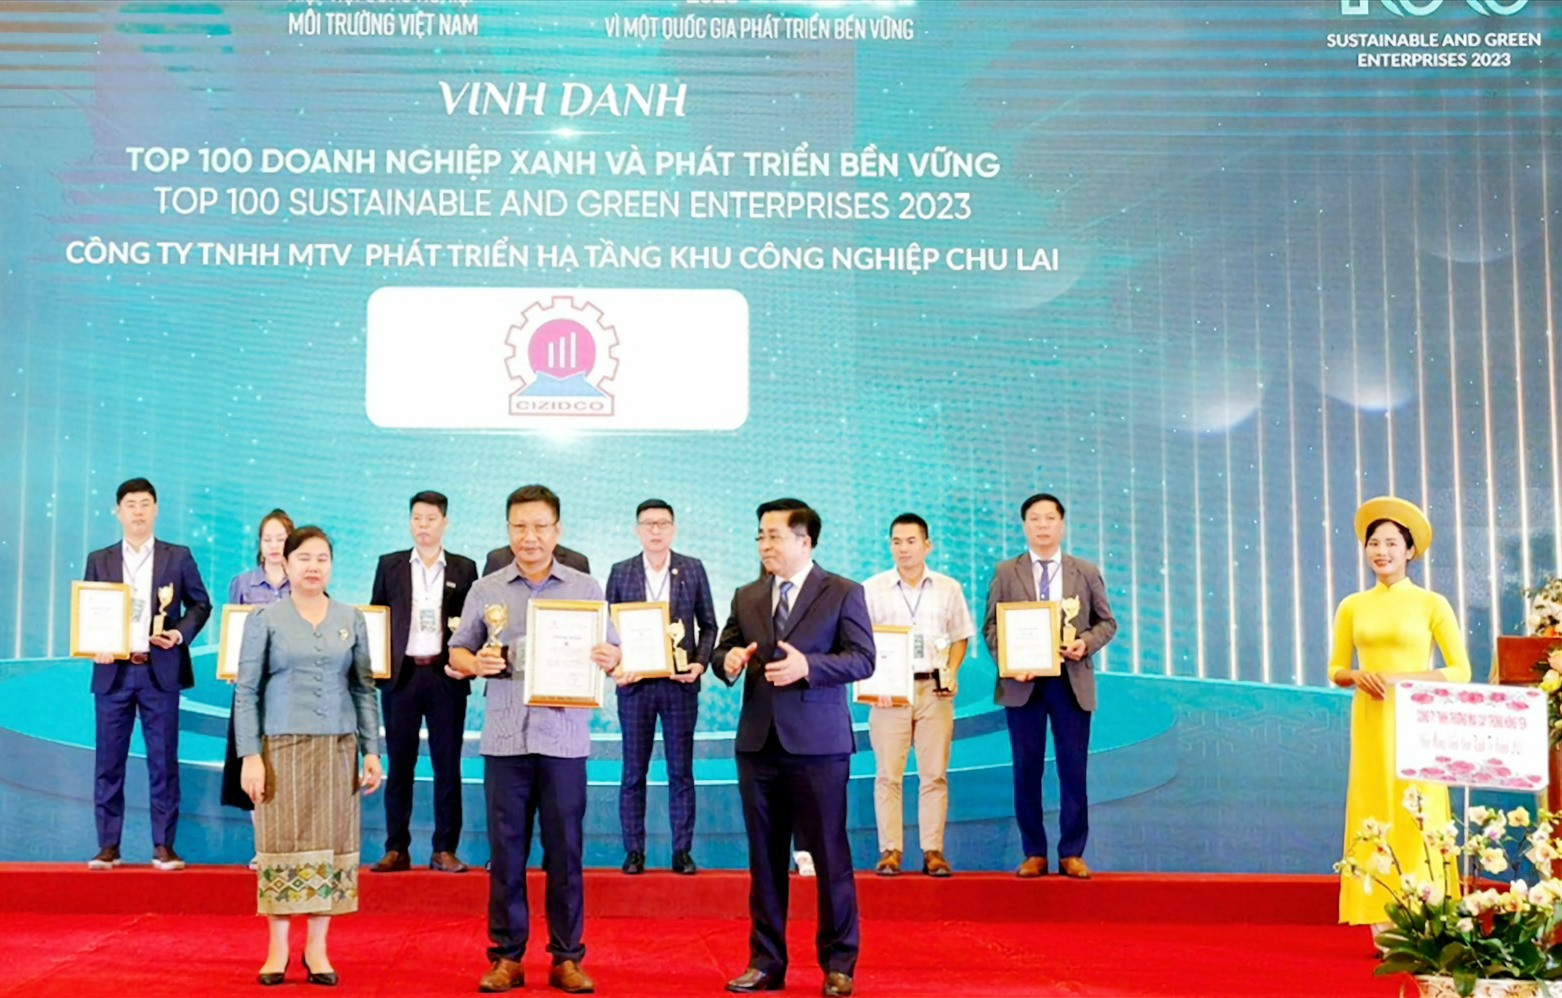 Ông Lê Ngọc Thủy - Giám đốc CIZIDCO đại diện đơn vị nhận vinh danh Tốp 100 Doanh nghiệp xanh và phát triển bền vững năm 2023. Ảnh: N.T.B